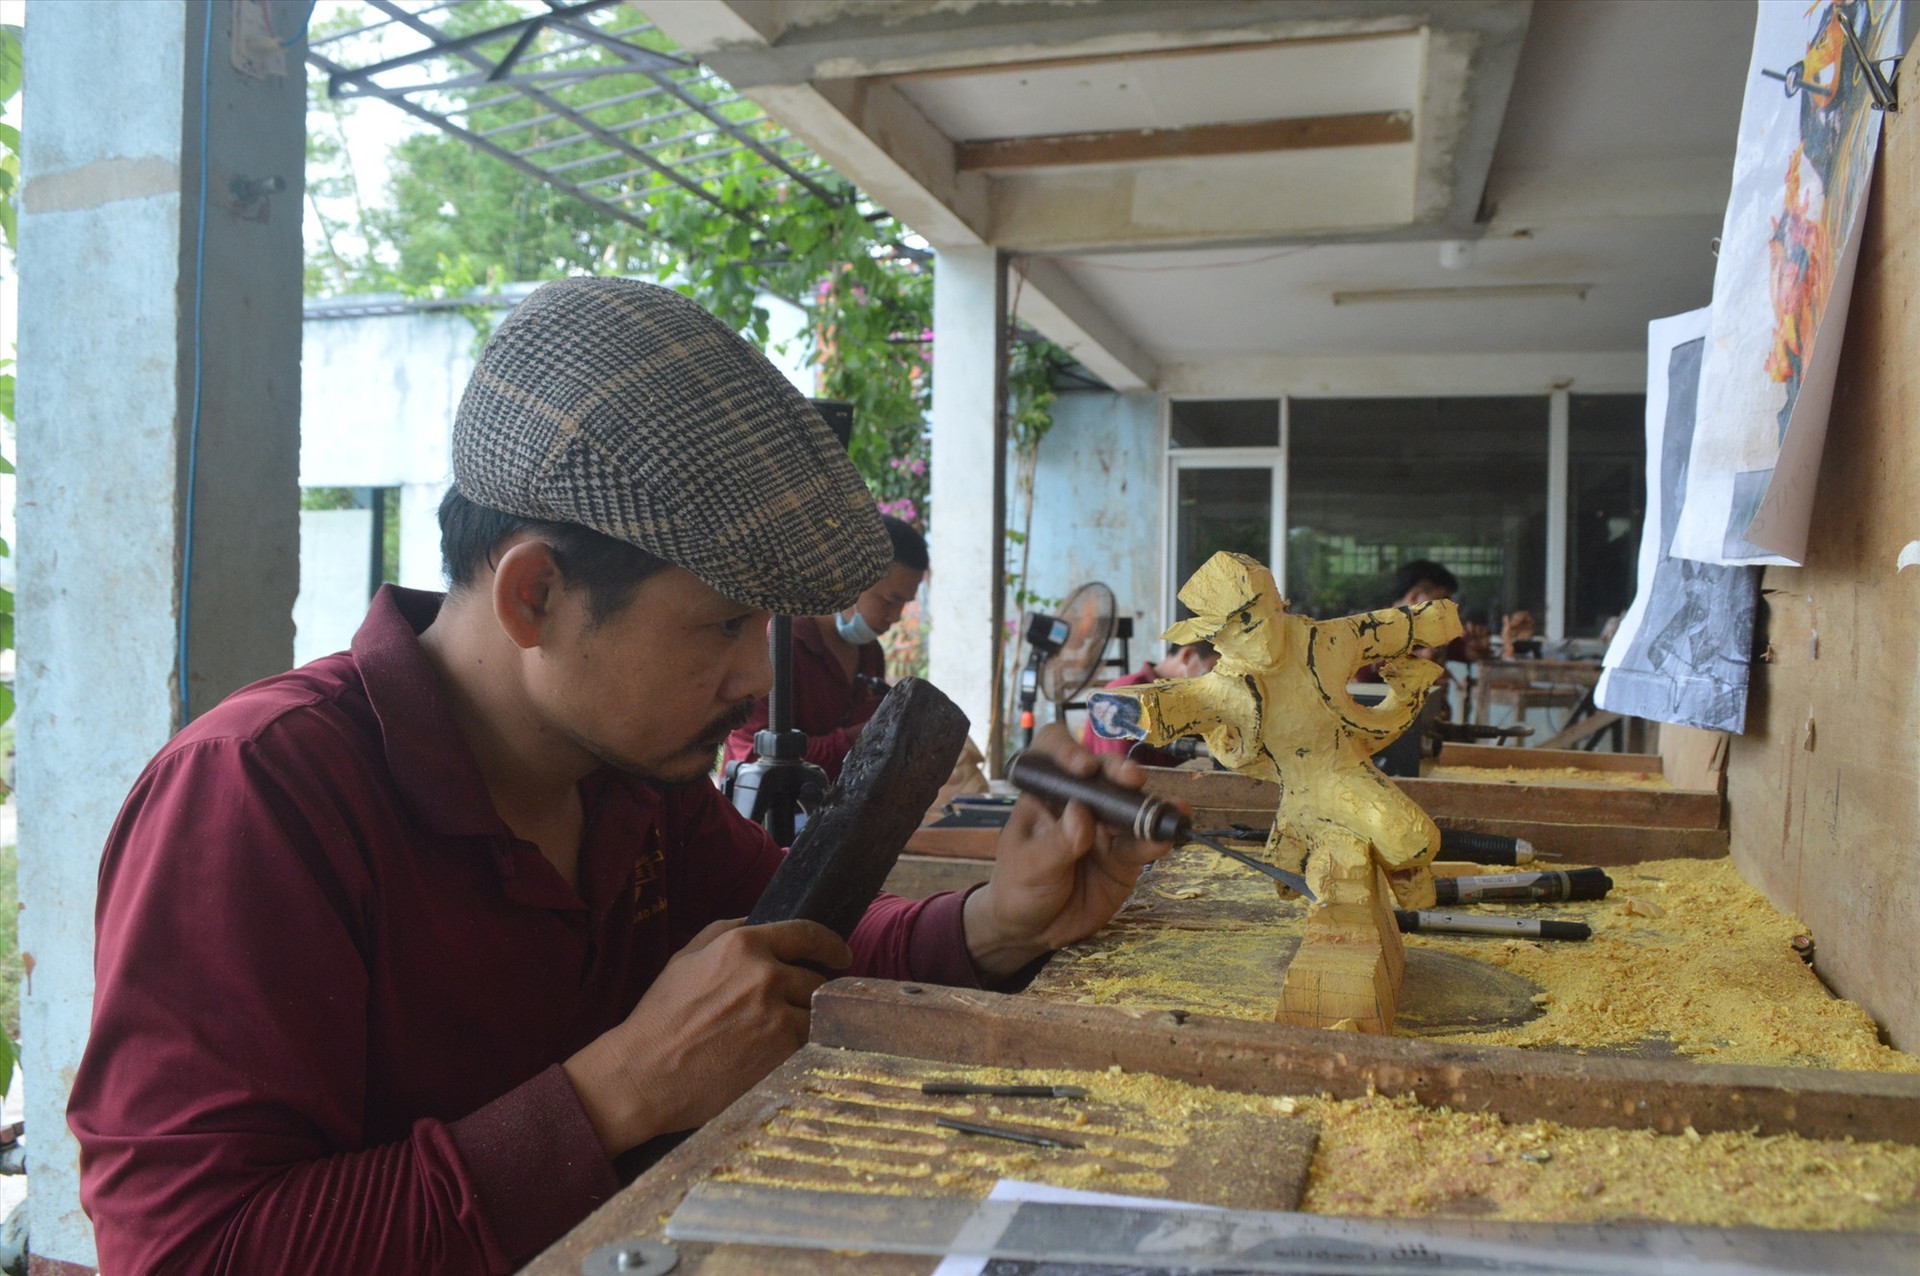 Việc công nhận các nghệ nhân, thợ giỏi sẽ giúp bảo tồn, phát huy giá trị văn hóa làng nghề. Ảnh: K.LINH